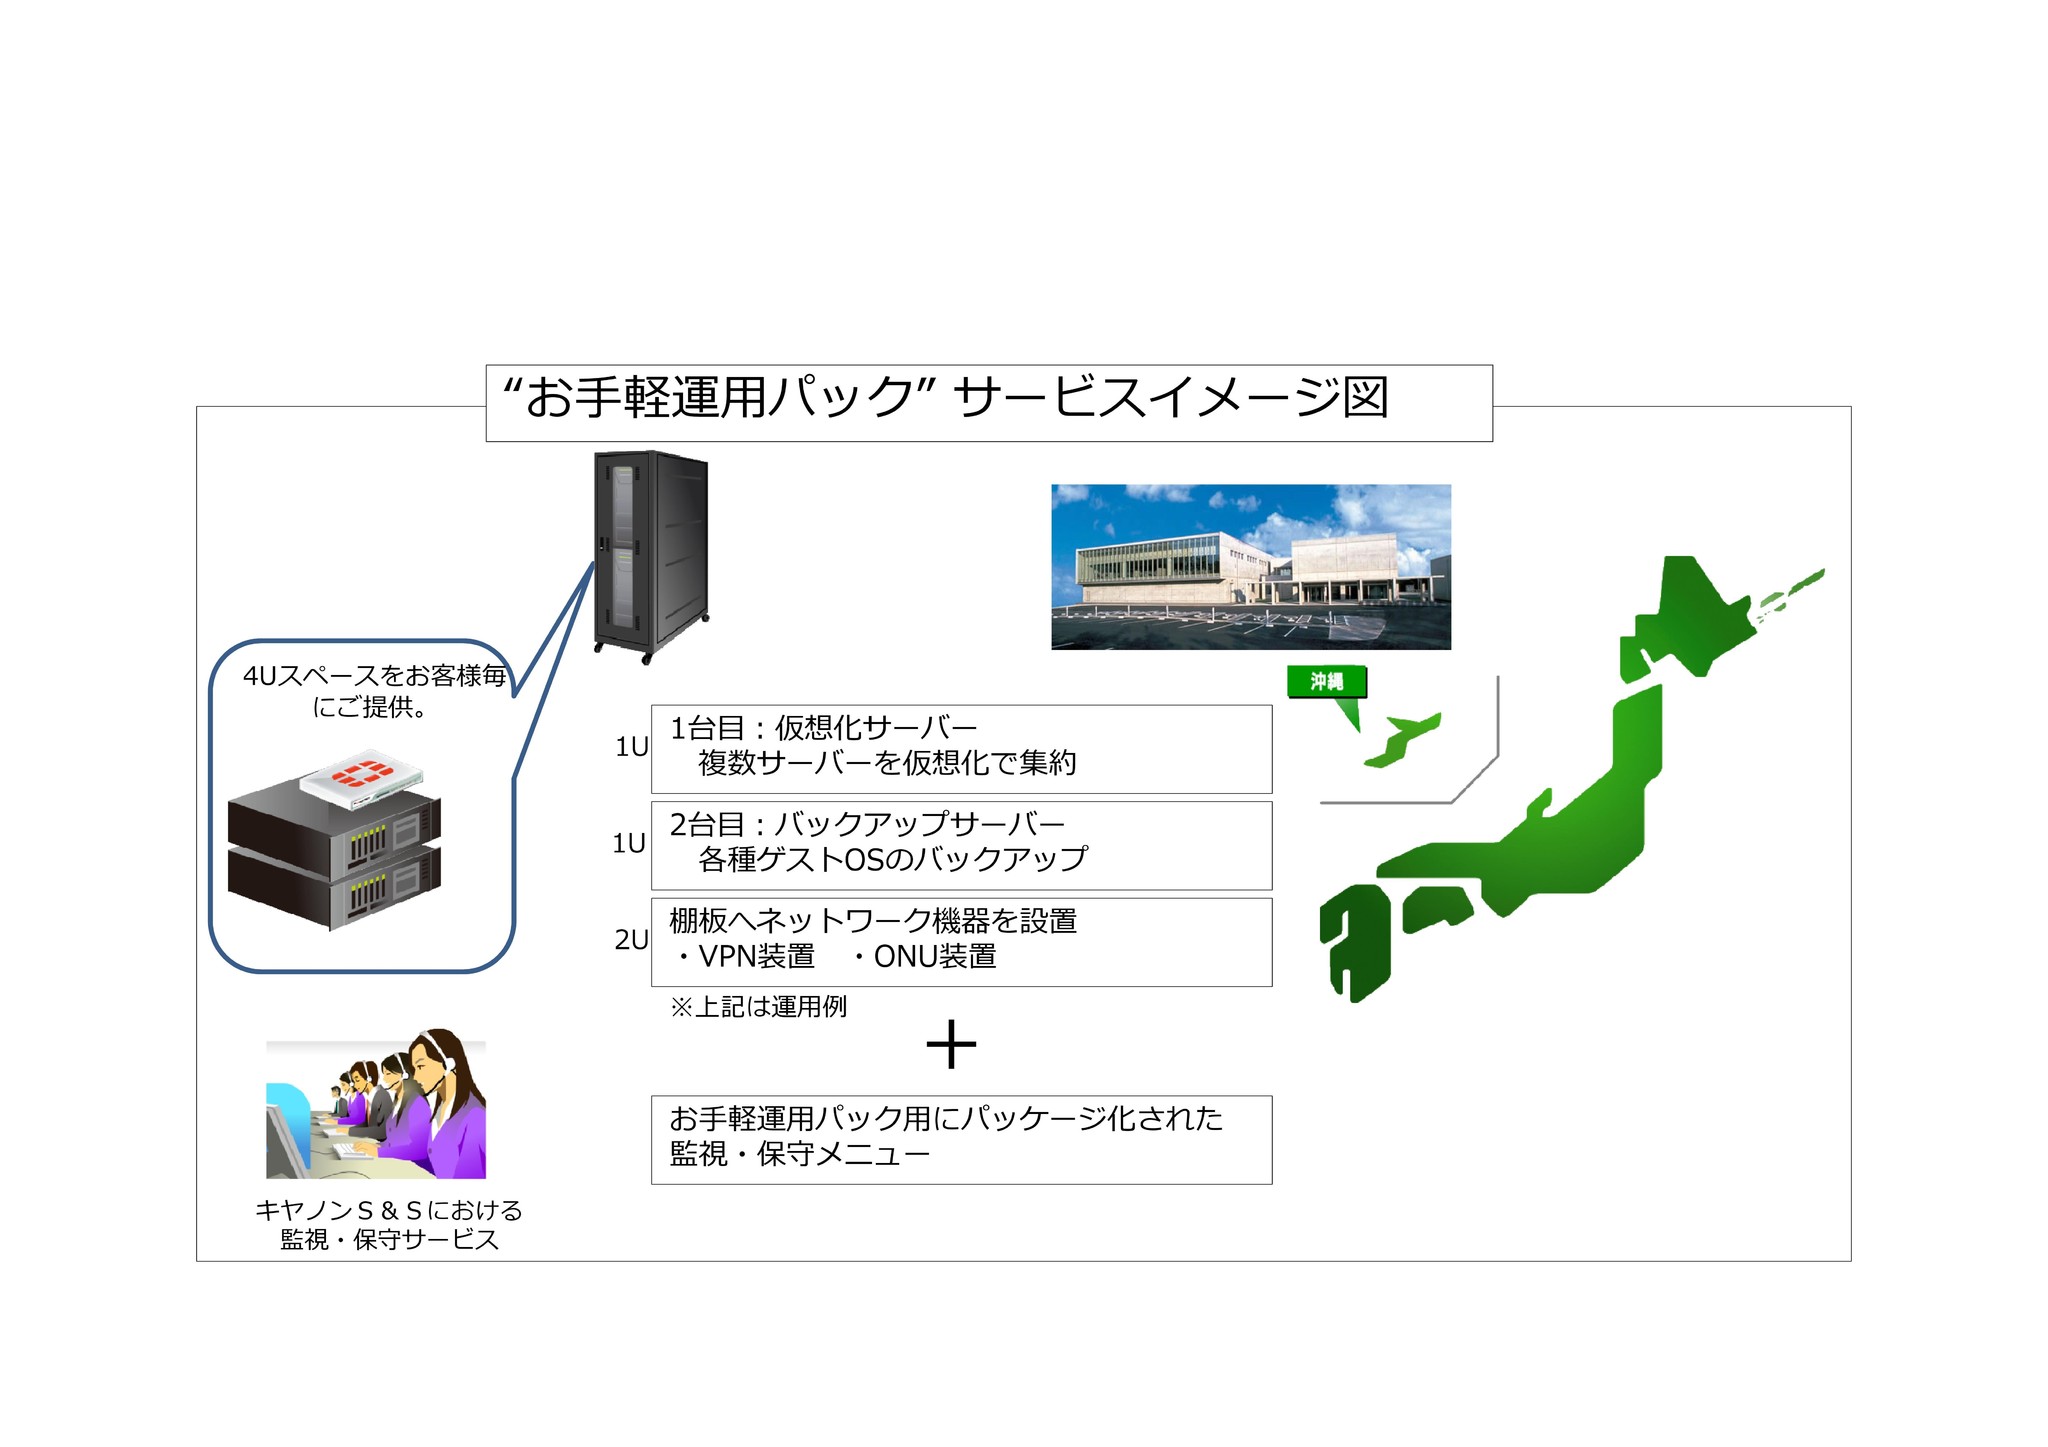 沖縄データセンターを活用した中小企業向けハウジングサービス お手軽運用パック を低価格で提供 キヤノンシステムアンドサポート株式会社のプレスリリース